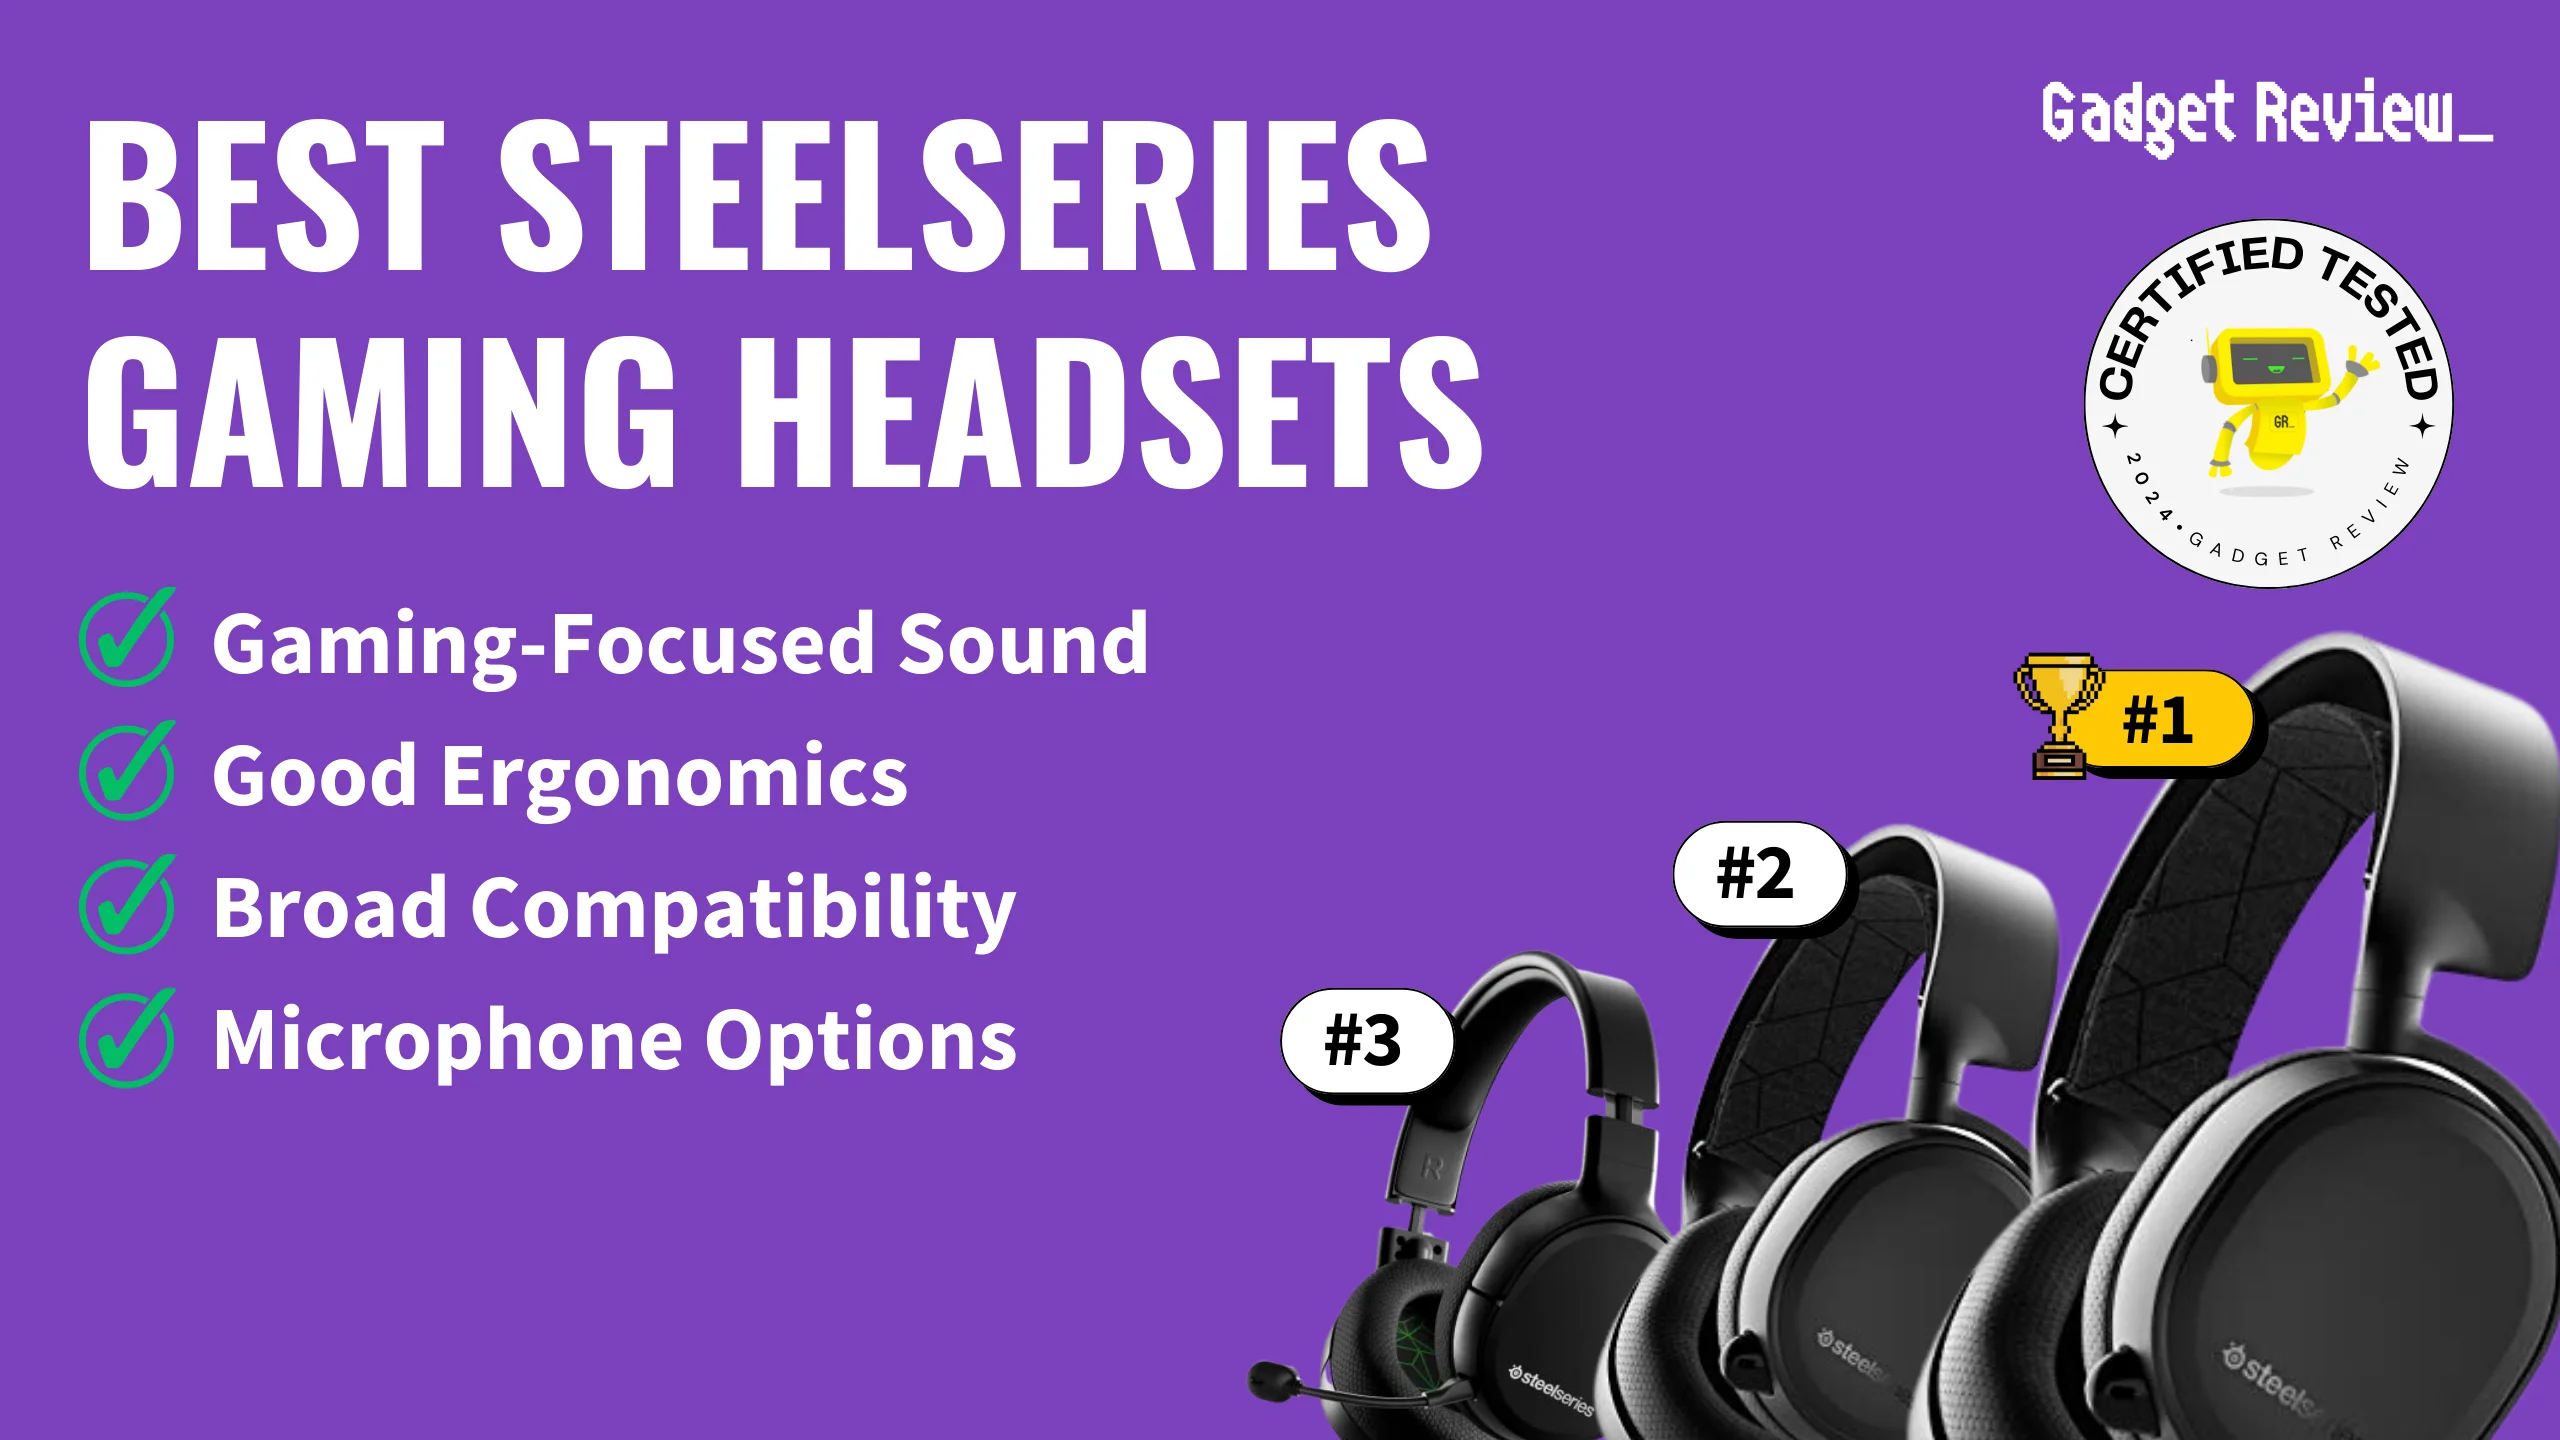 Best Steelseries Gaming Headsets